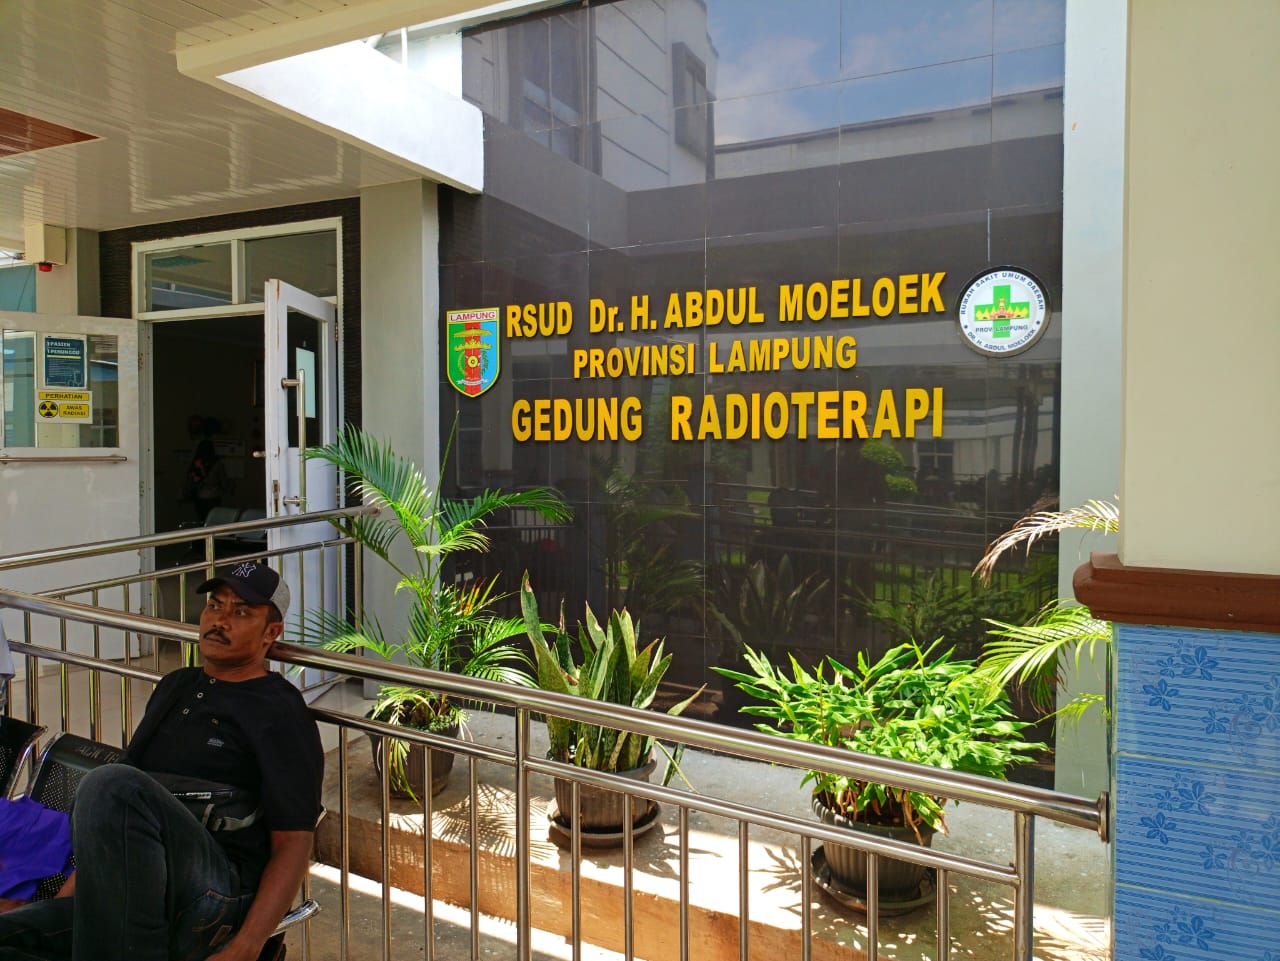 RSUDAM Satu-Satunya Rumah Sakit di Lampung Yang Memiliki Pelayanan Radioterapi Dengan Nuklir